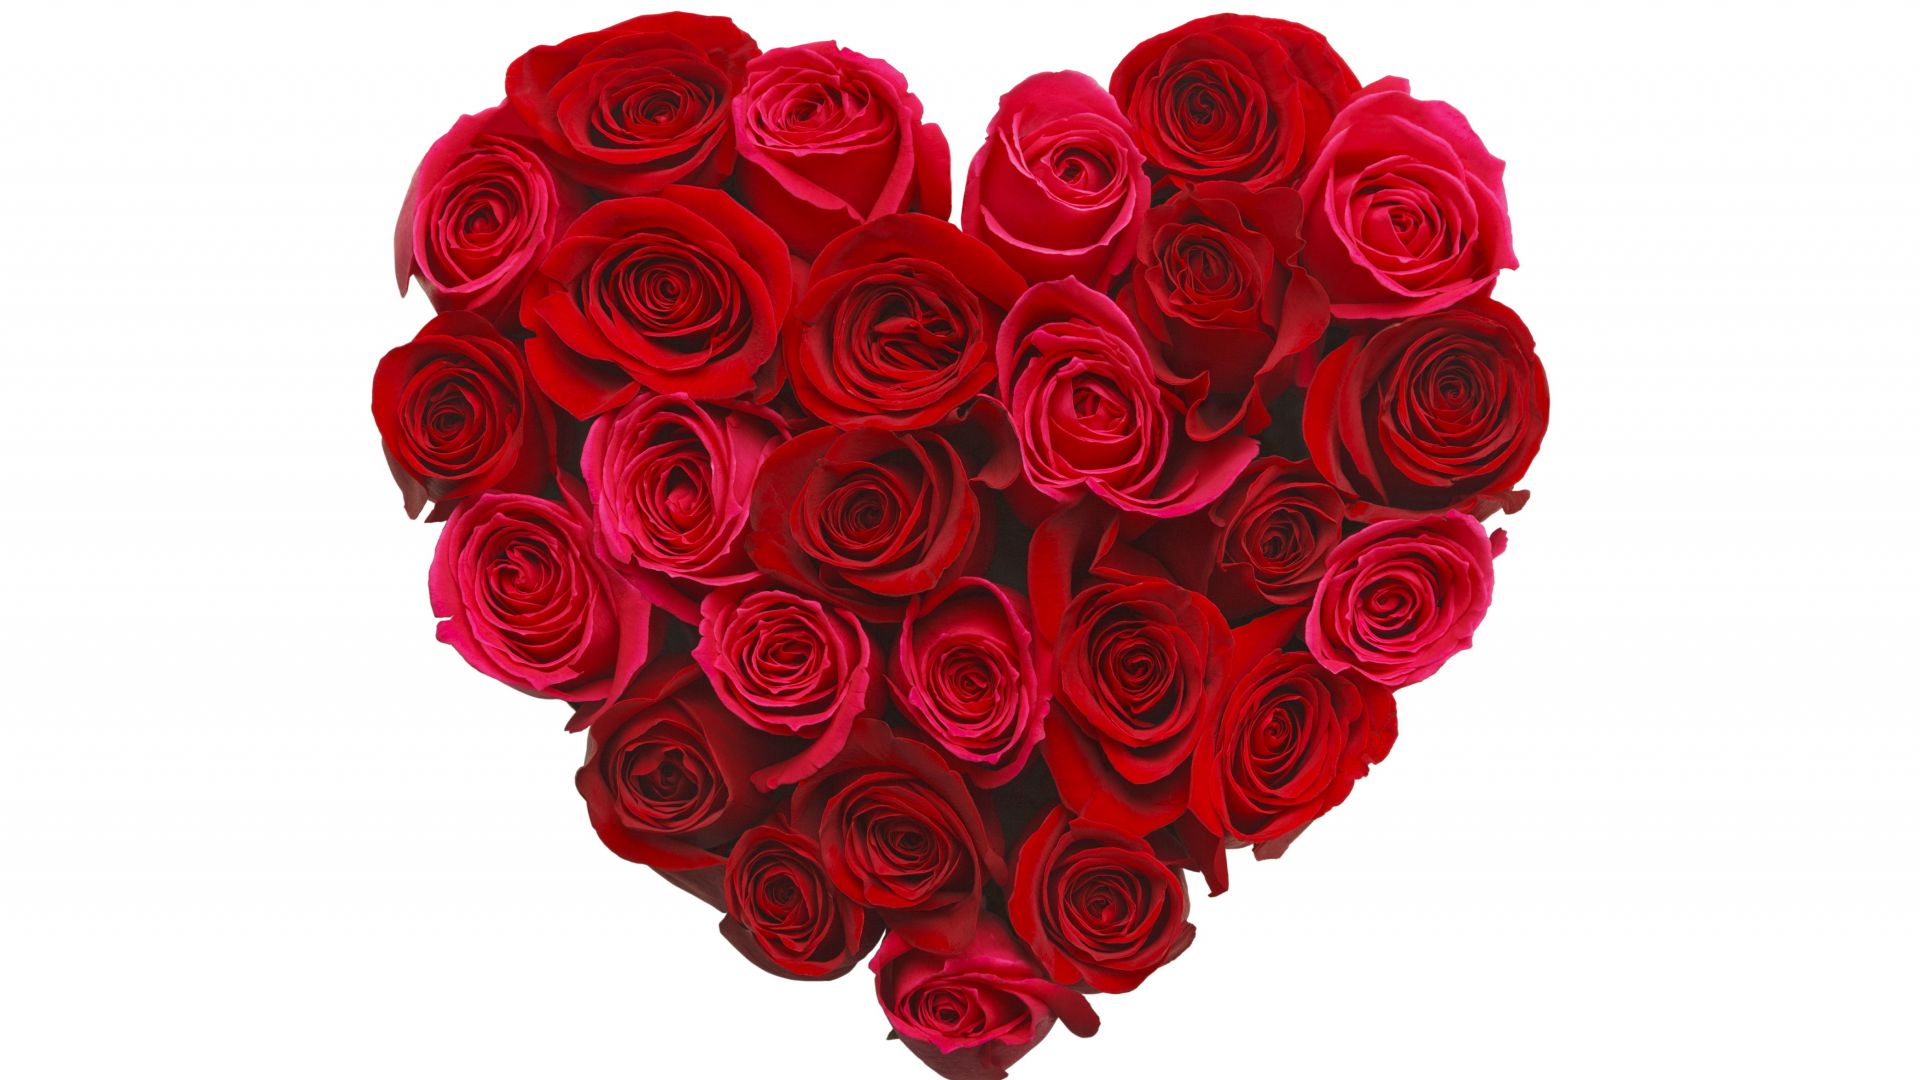 фото любовь, сердце, цвеьы, love image, heart, 5k, rose, flowers (horizontal)